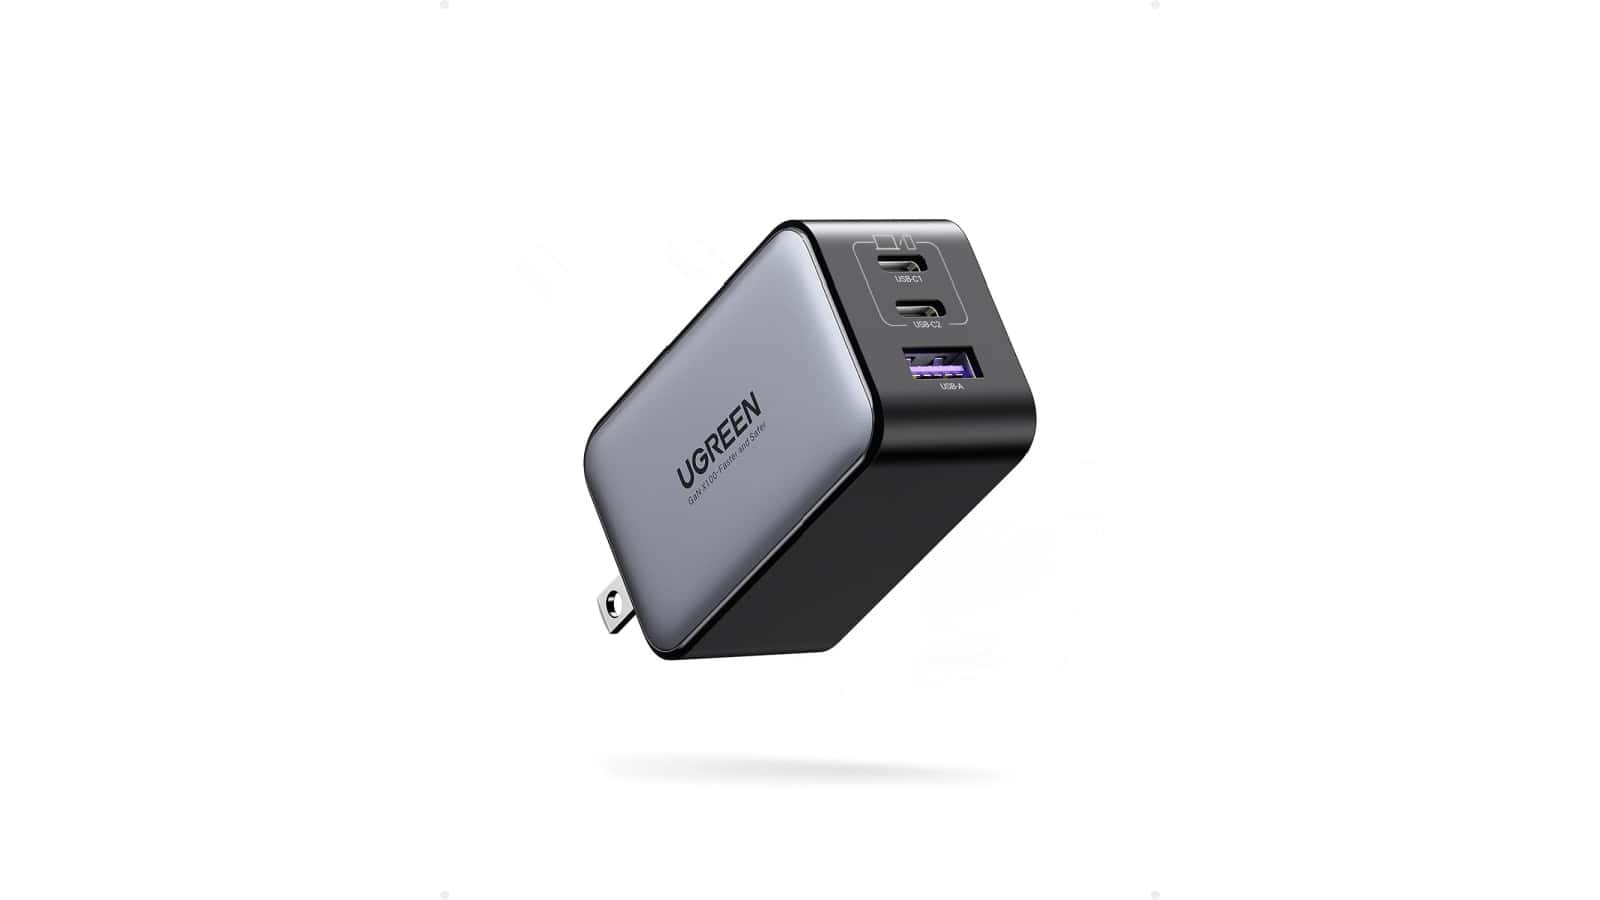 Obtenga el cargador USB-C 3 en 1 de 65 W de UGREEN por solo $ 33